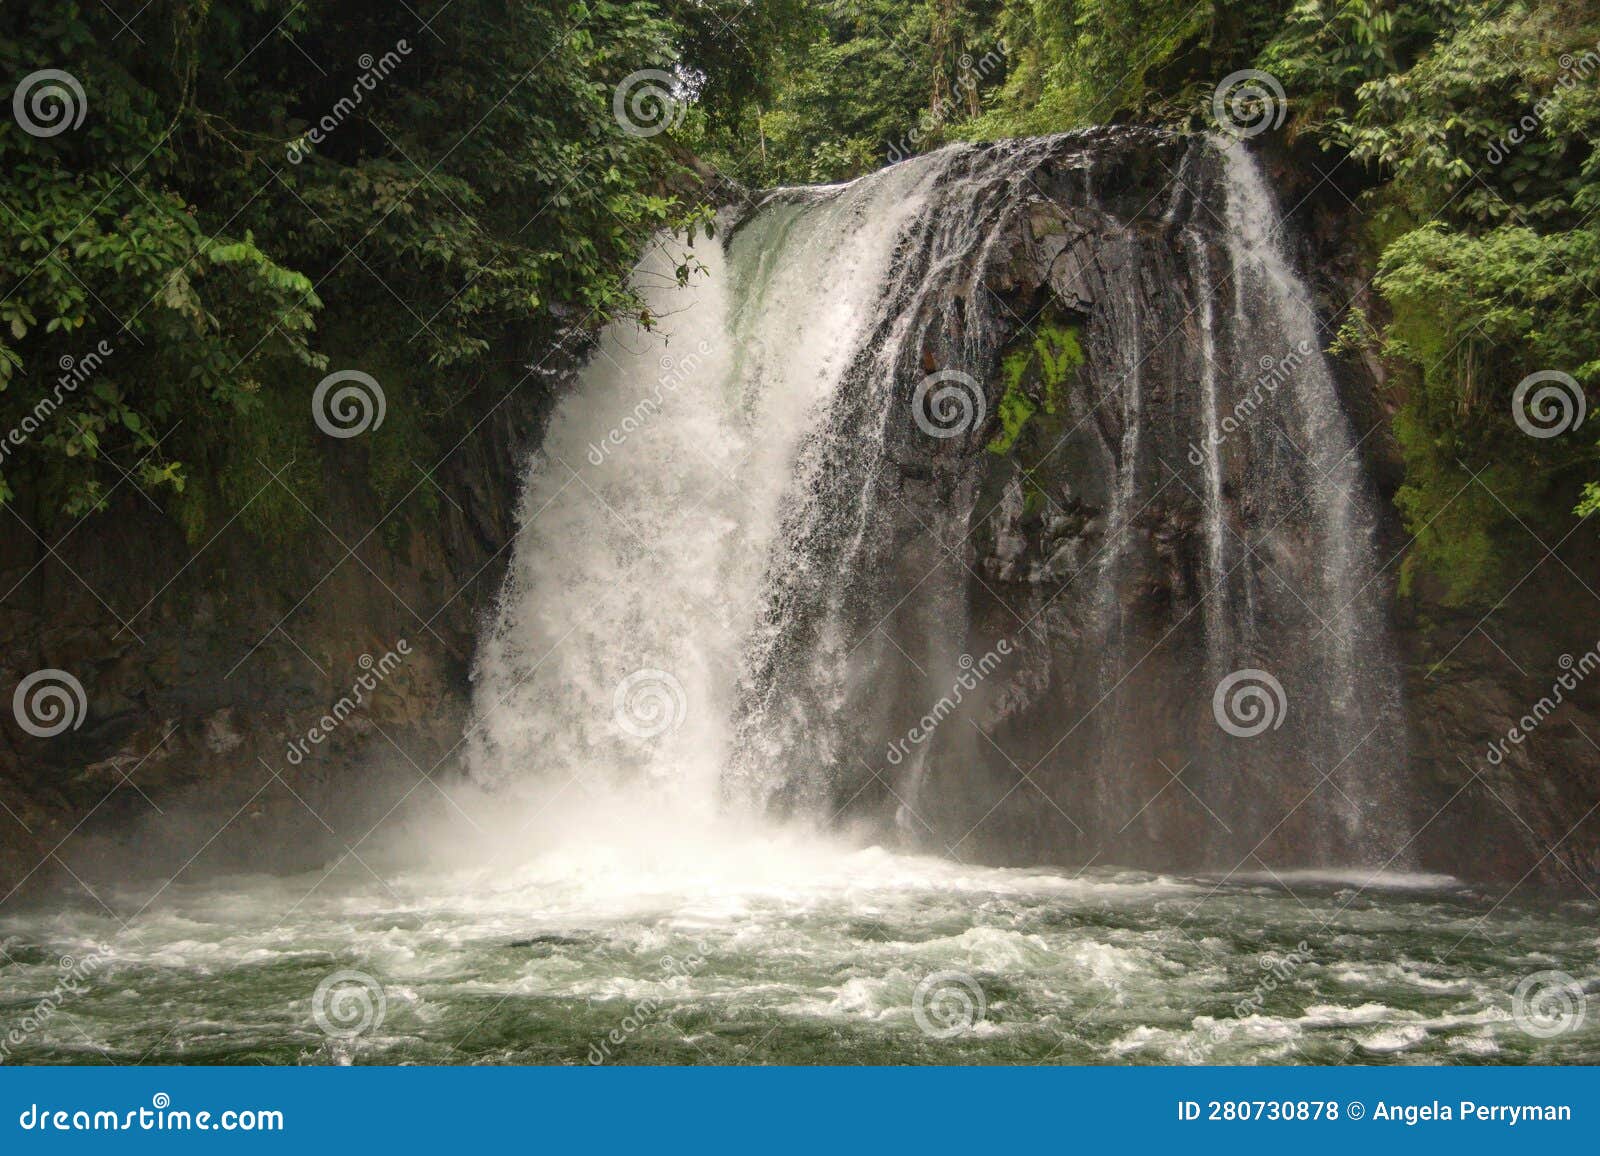 waterfall on the hollin river in ecuador